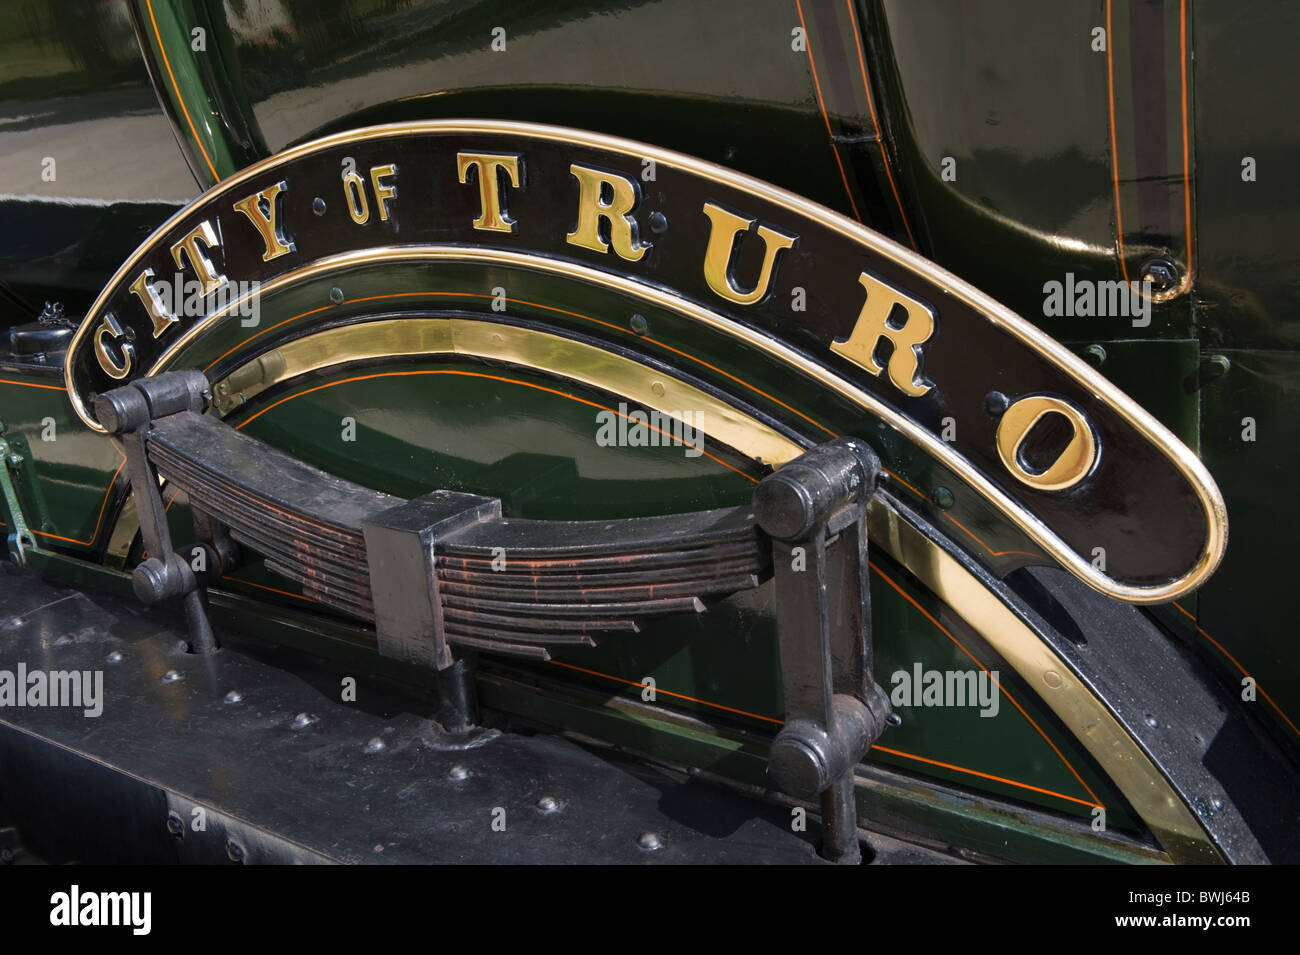 Typenschild der Stadt von Truro GWR 3700 Klasse 3440 die erste Dampfmaschine auf eine Geschwindigkeit von über 100 km/h im Jahr 1904 zu erreichen Stockfoto